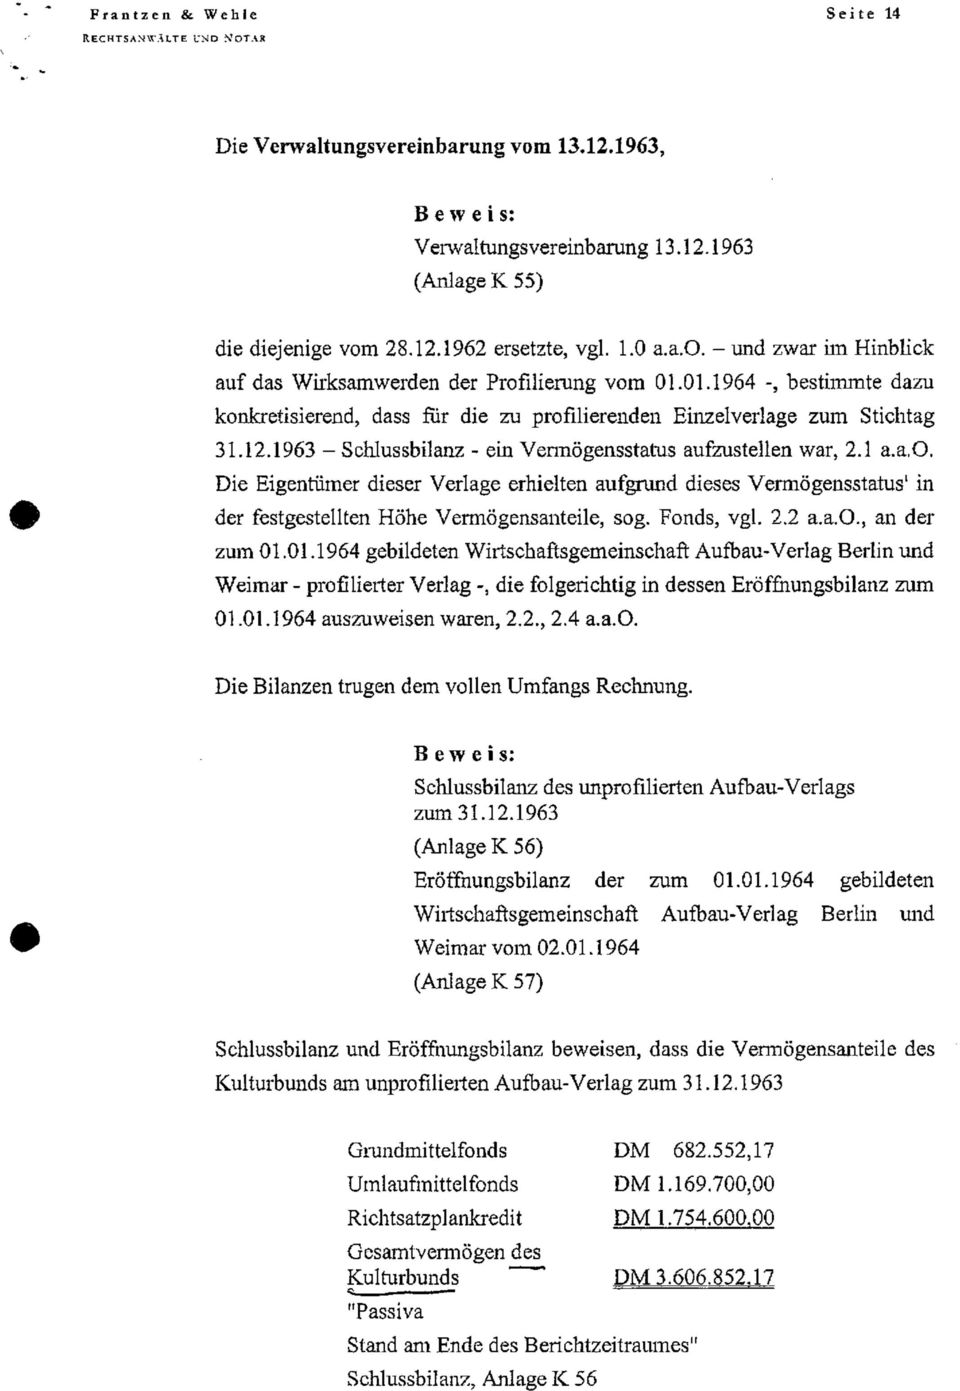 Fonds, vgl. 2.2 a.a.o., an der zum 01.01.1964 gebildeten Wirtschaftsgemeinschaft Aufbau-Verlag Berlin und Weimar - profilierter Verlag die folgerichtig in dessen Eröffnungsbilanz zum 01.01.1964 auszuweisen waren, 2.